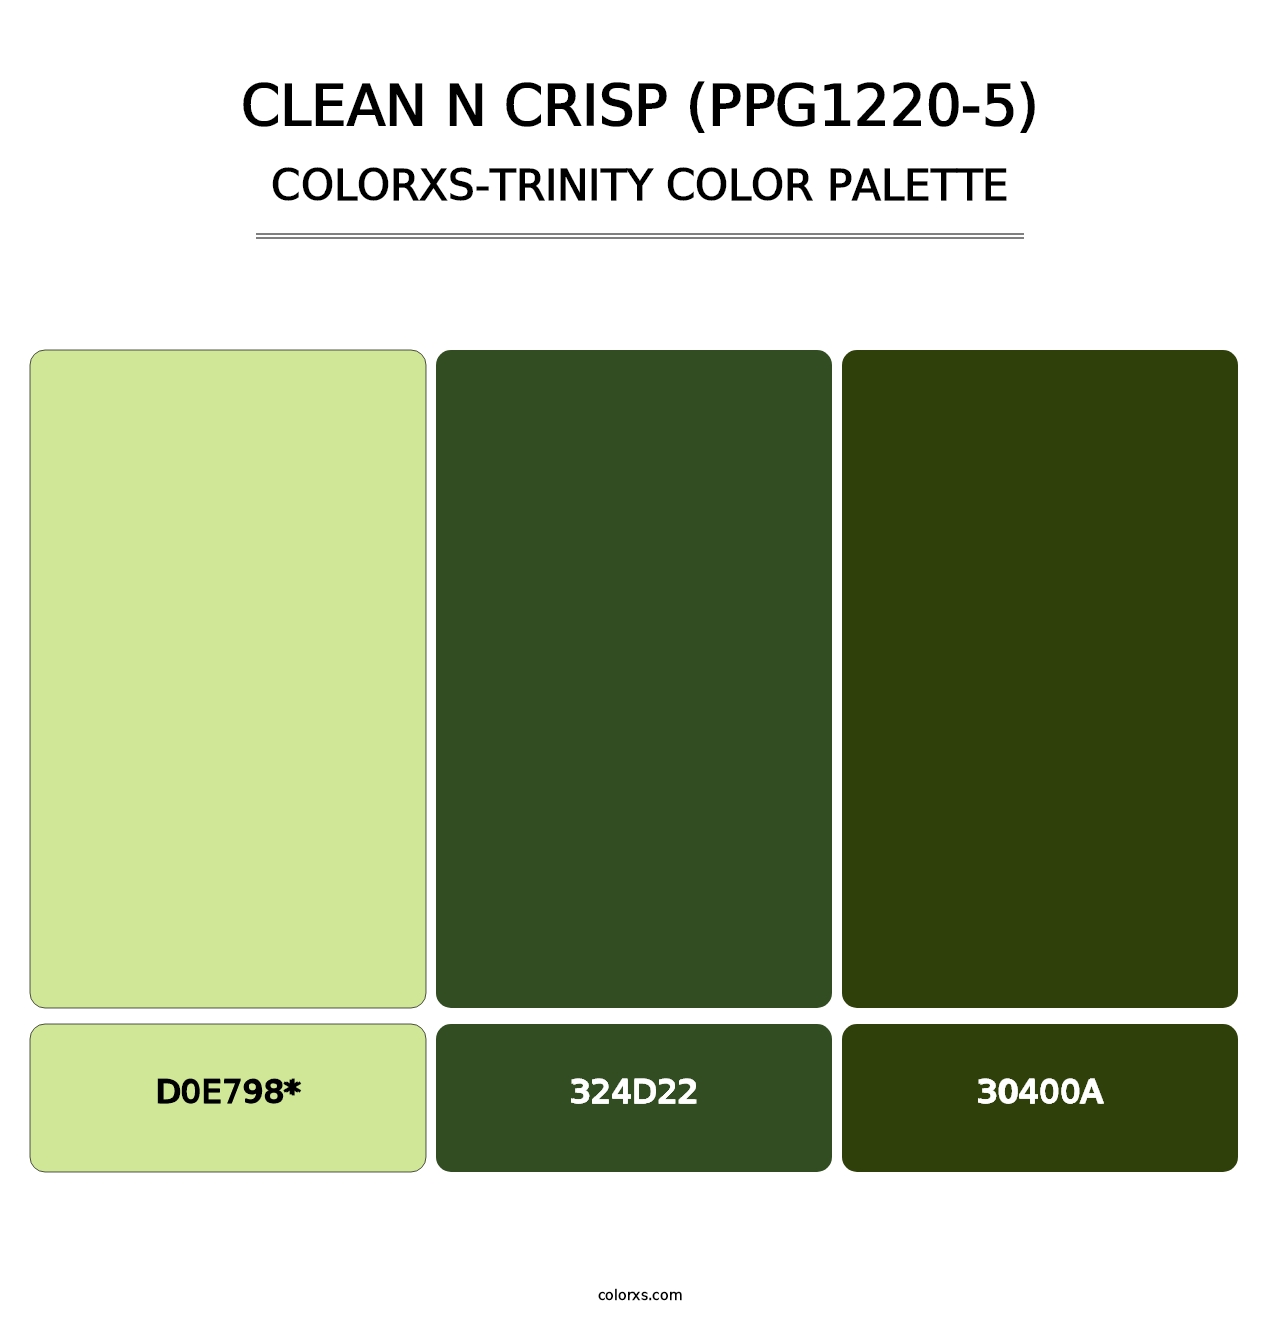 Clean N Crisp (PPG1220-5) - Colorxs Trinity Palette